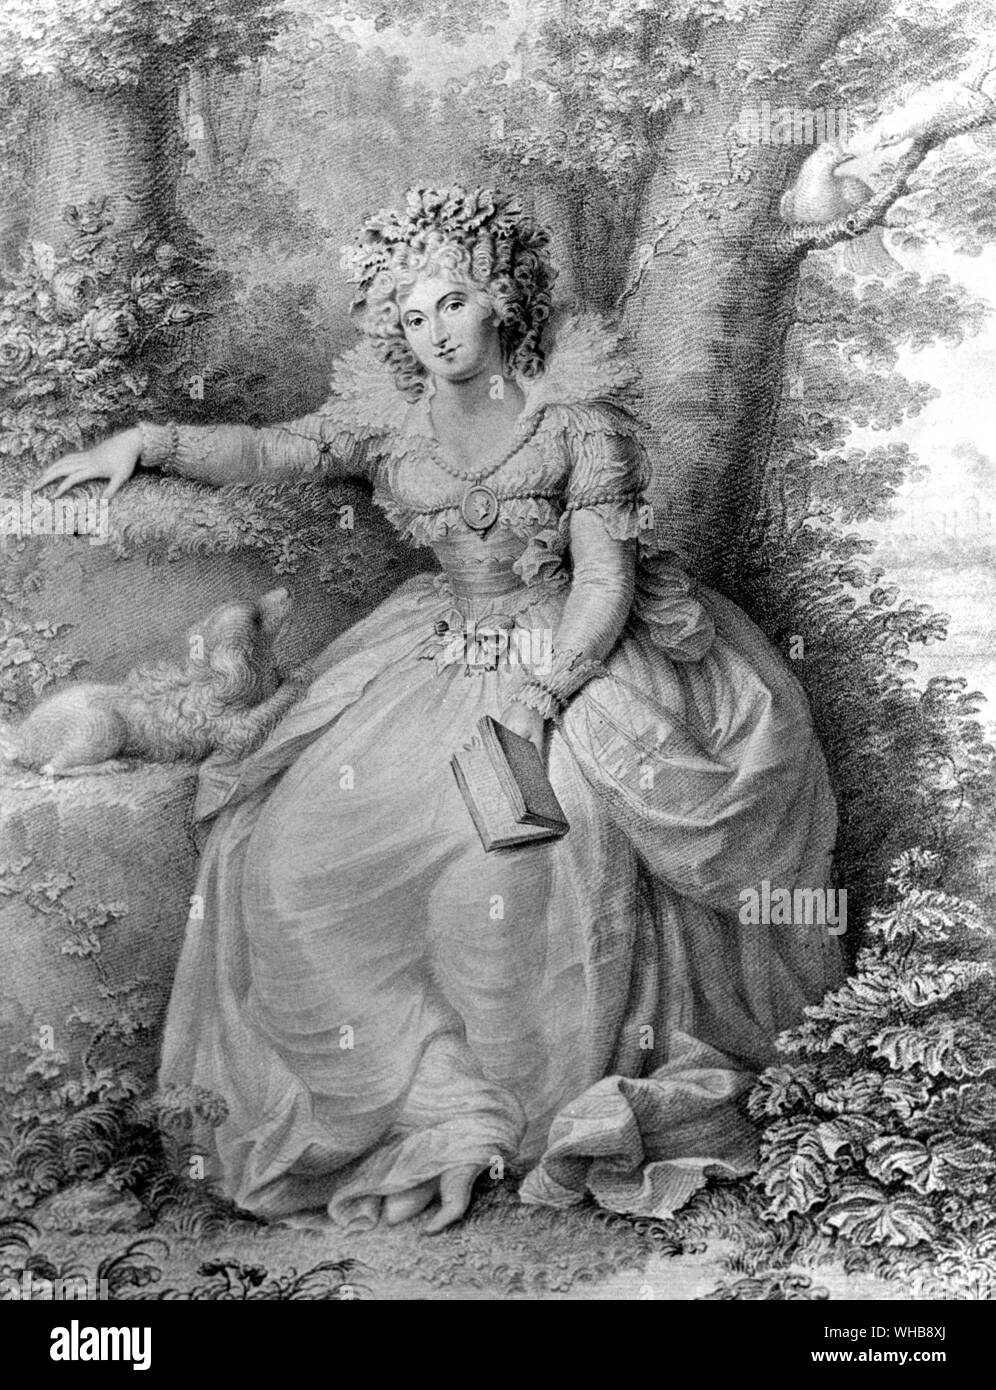 Frau Fitzherbert, graviert und von Jean Conde (1725-94), 1792 (Walze Gravur) von Richard Cosway veröffentlicht - heimlich der Prinz von Wales, später George IV - Gravur im British Museum, London (Print) (J. verheiratet R. Freeman). Stockfoto